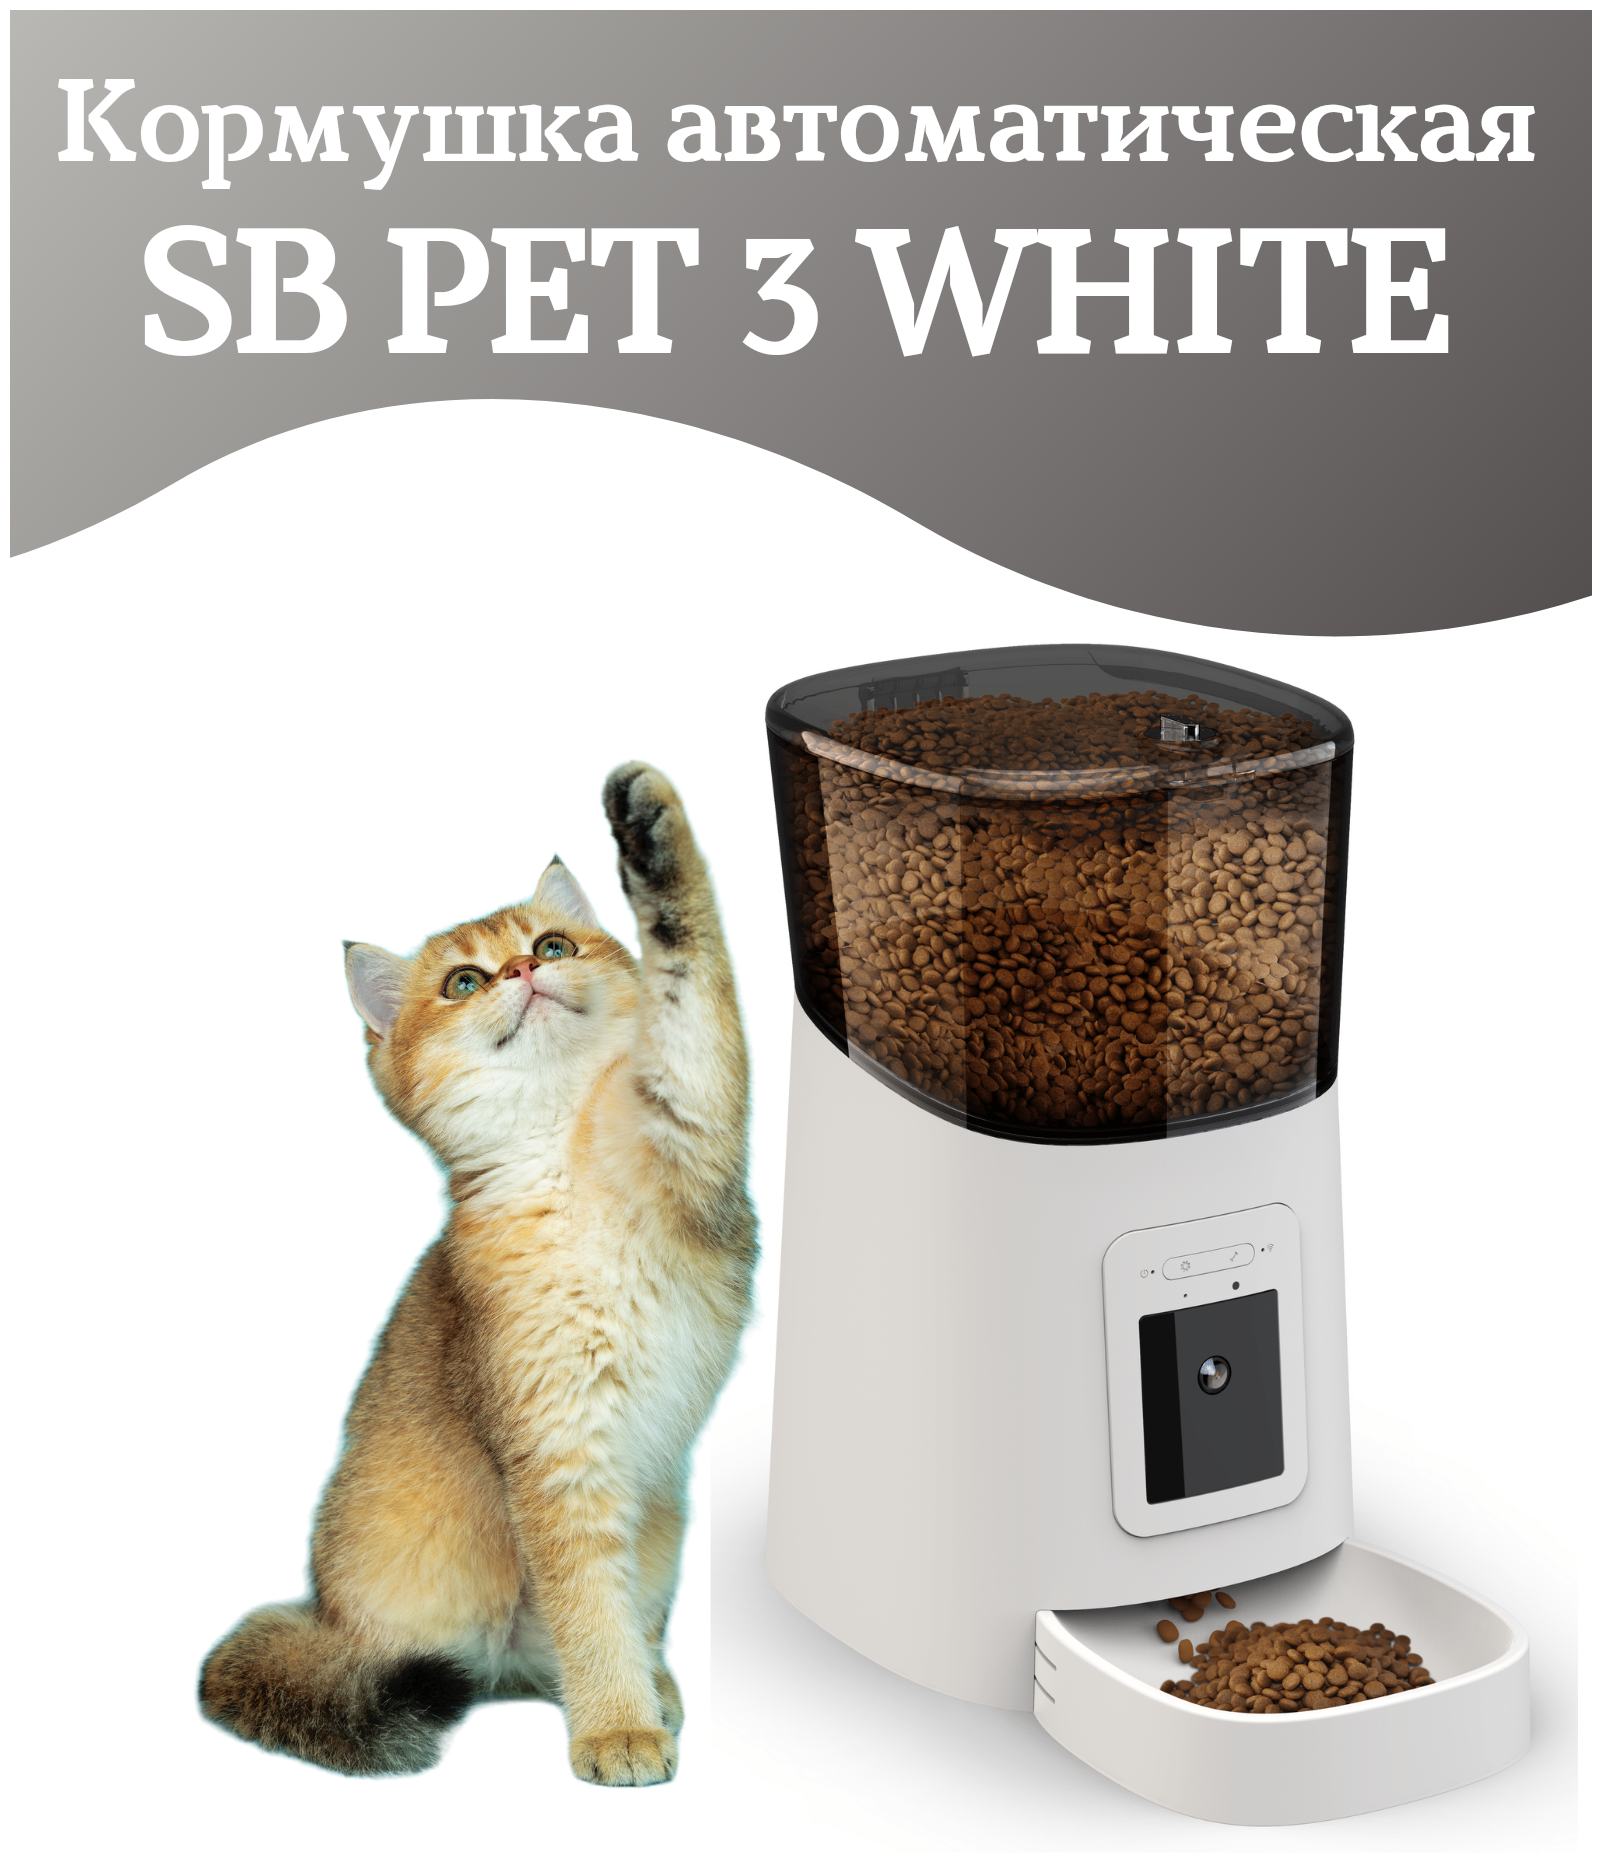 Автоматическая кормушка SB PET 3 WHITE, миска для кошек, собак, умная автокормушка с камерой видеонаблюдения 1080 р, объем 6л, SAFEBURG